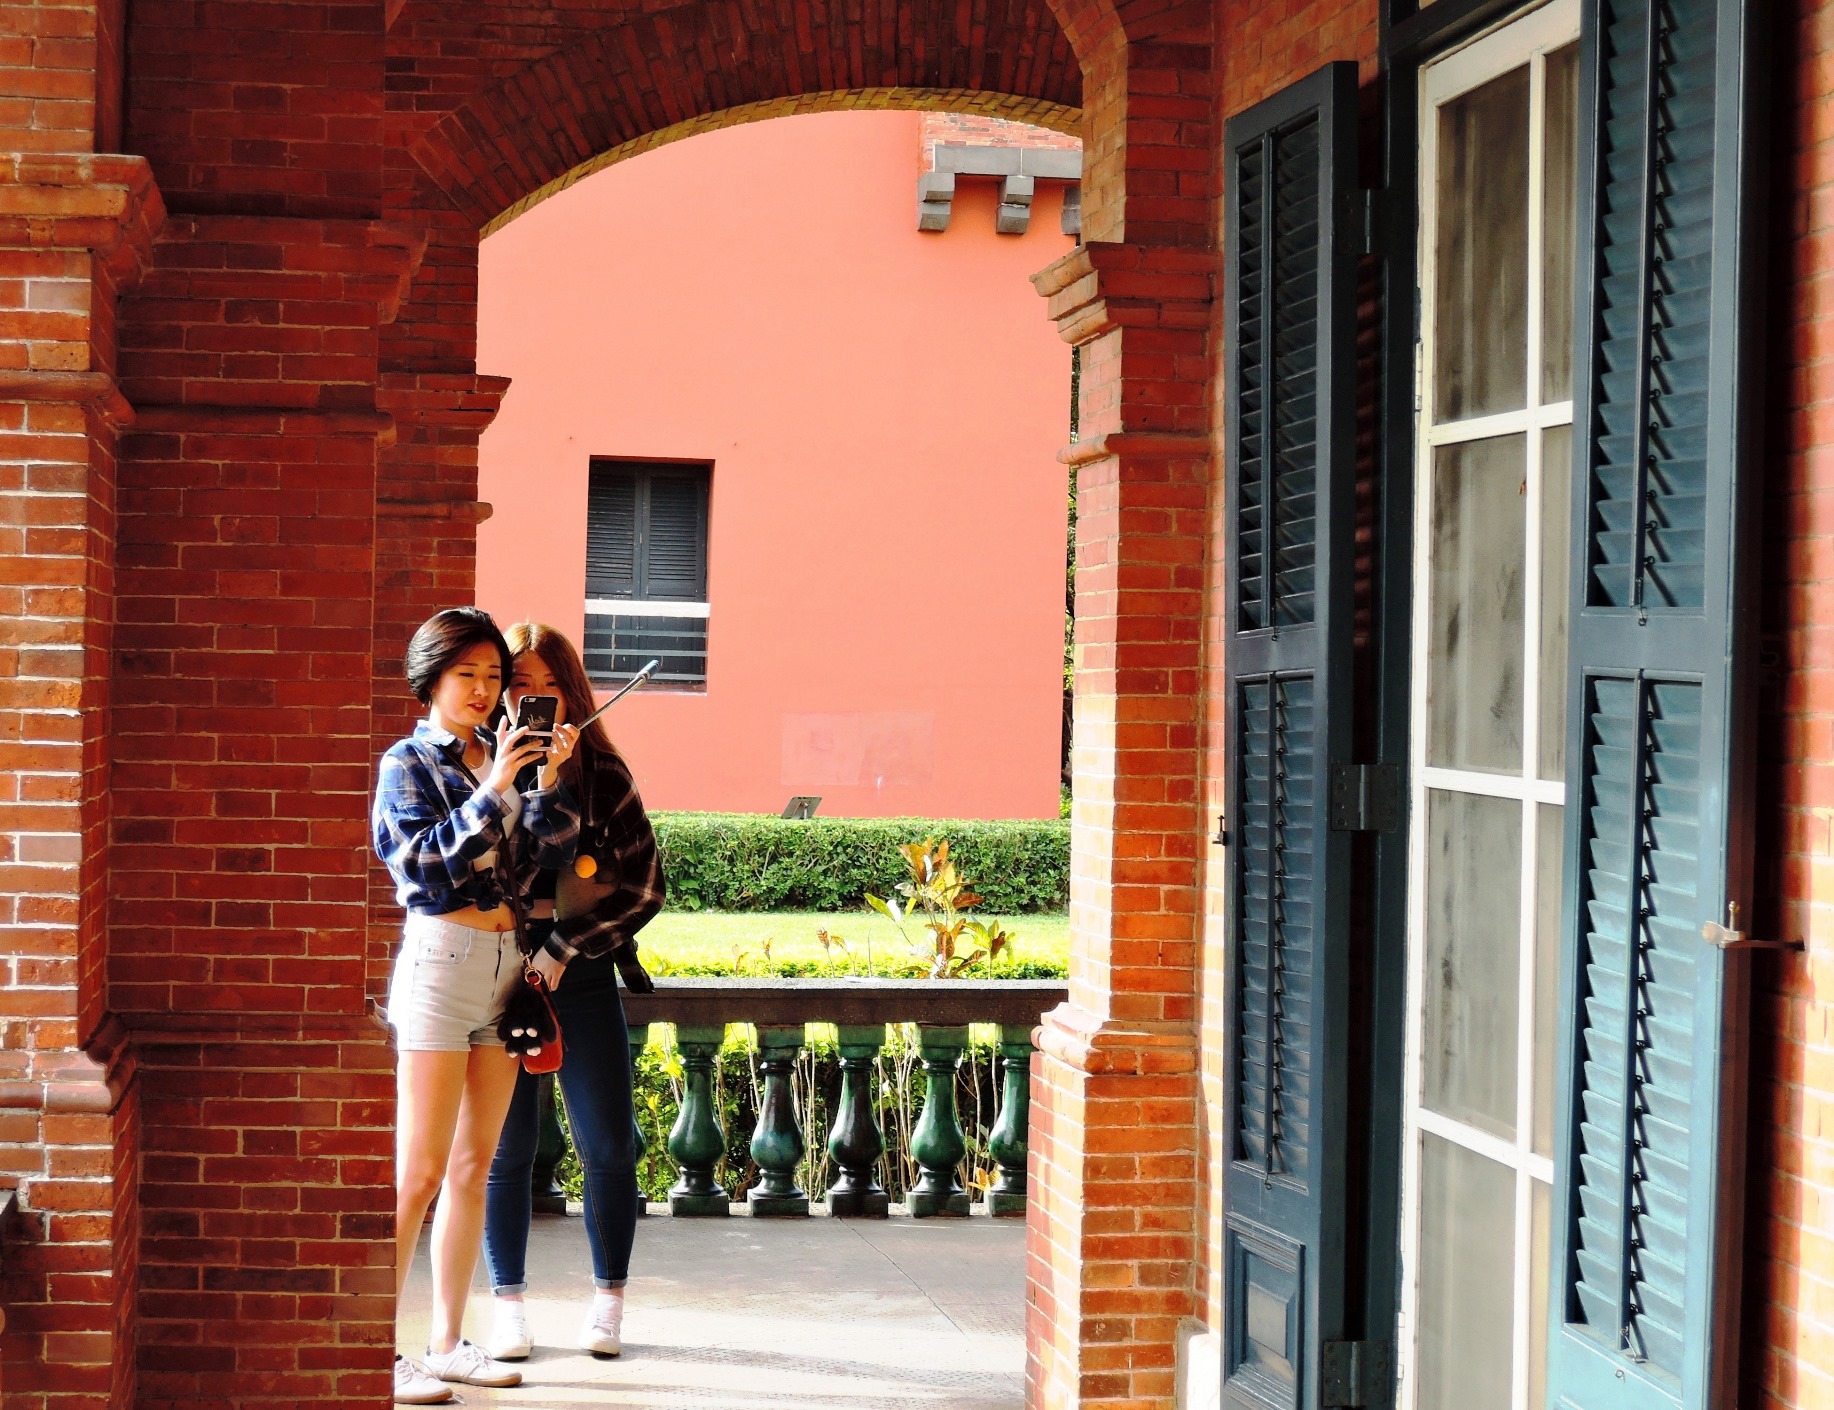 淡古公關照：淡水紅毛城英國領事官邸迴廊建築之美吸引韓國遊客拍照留念。